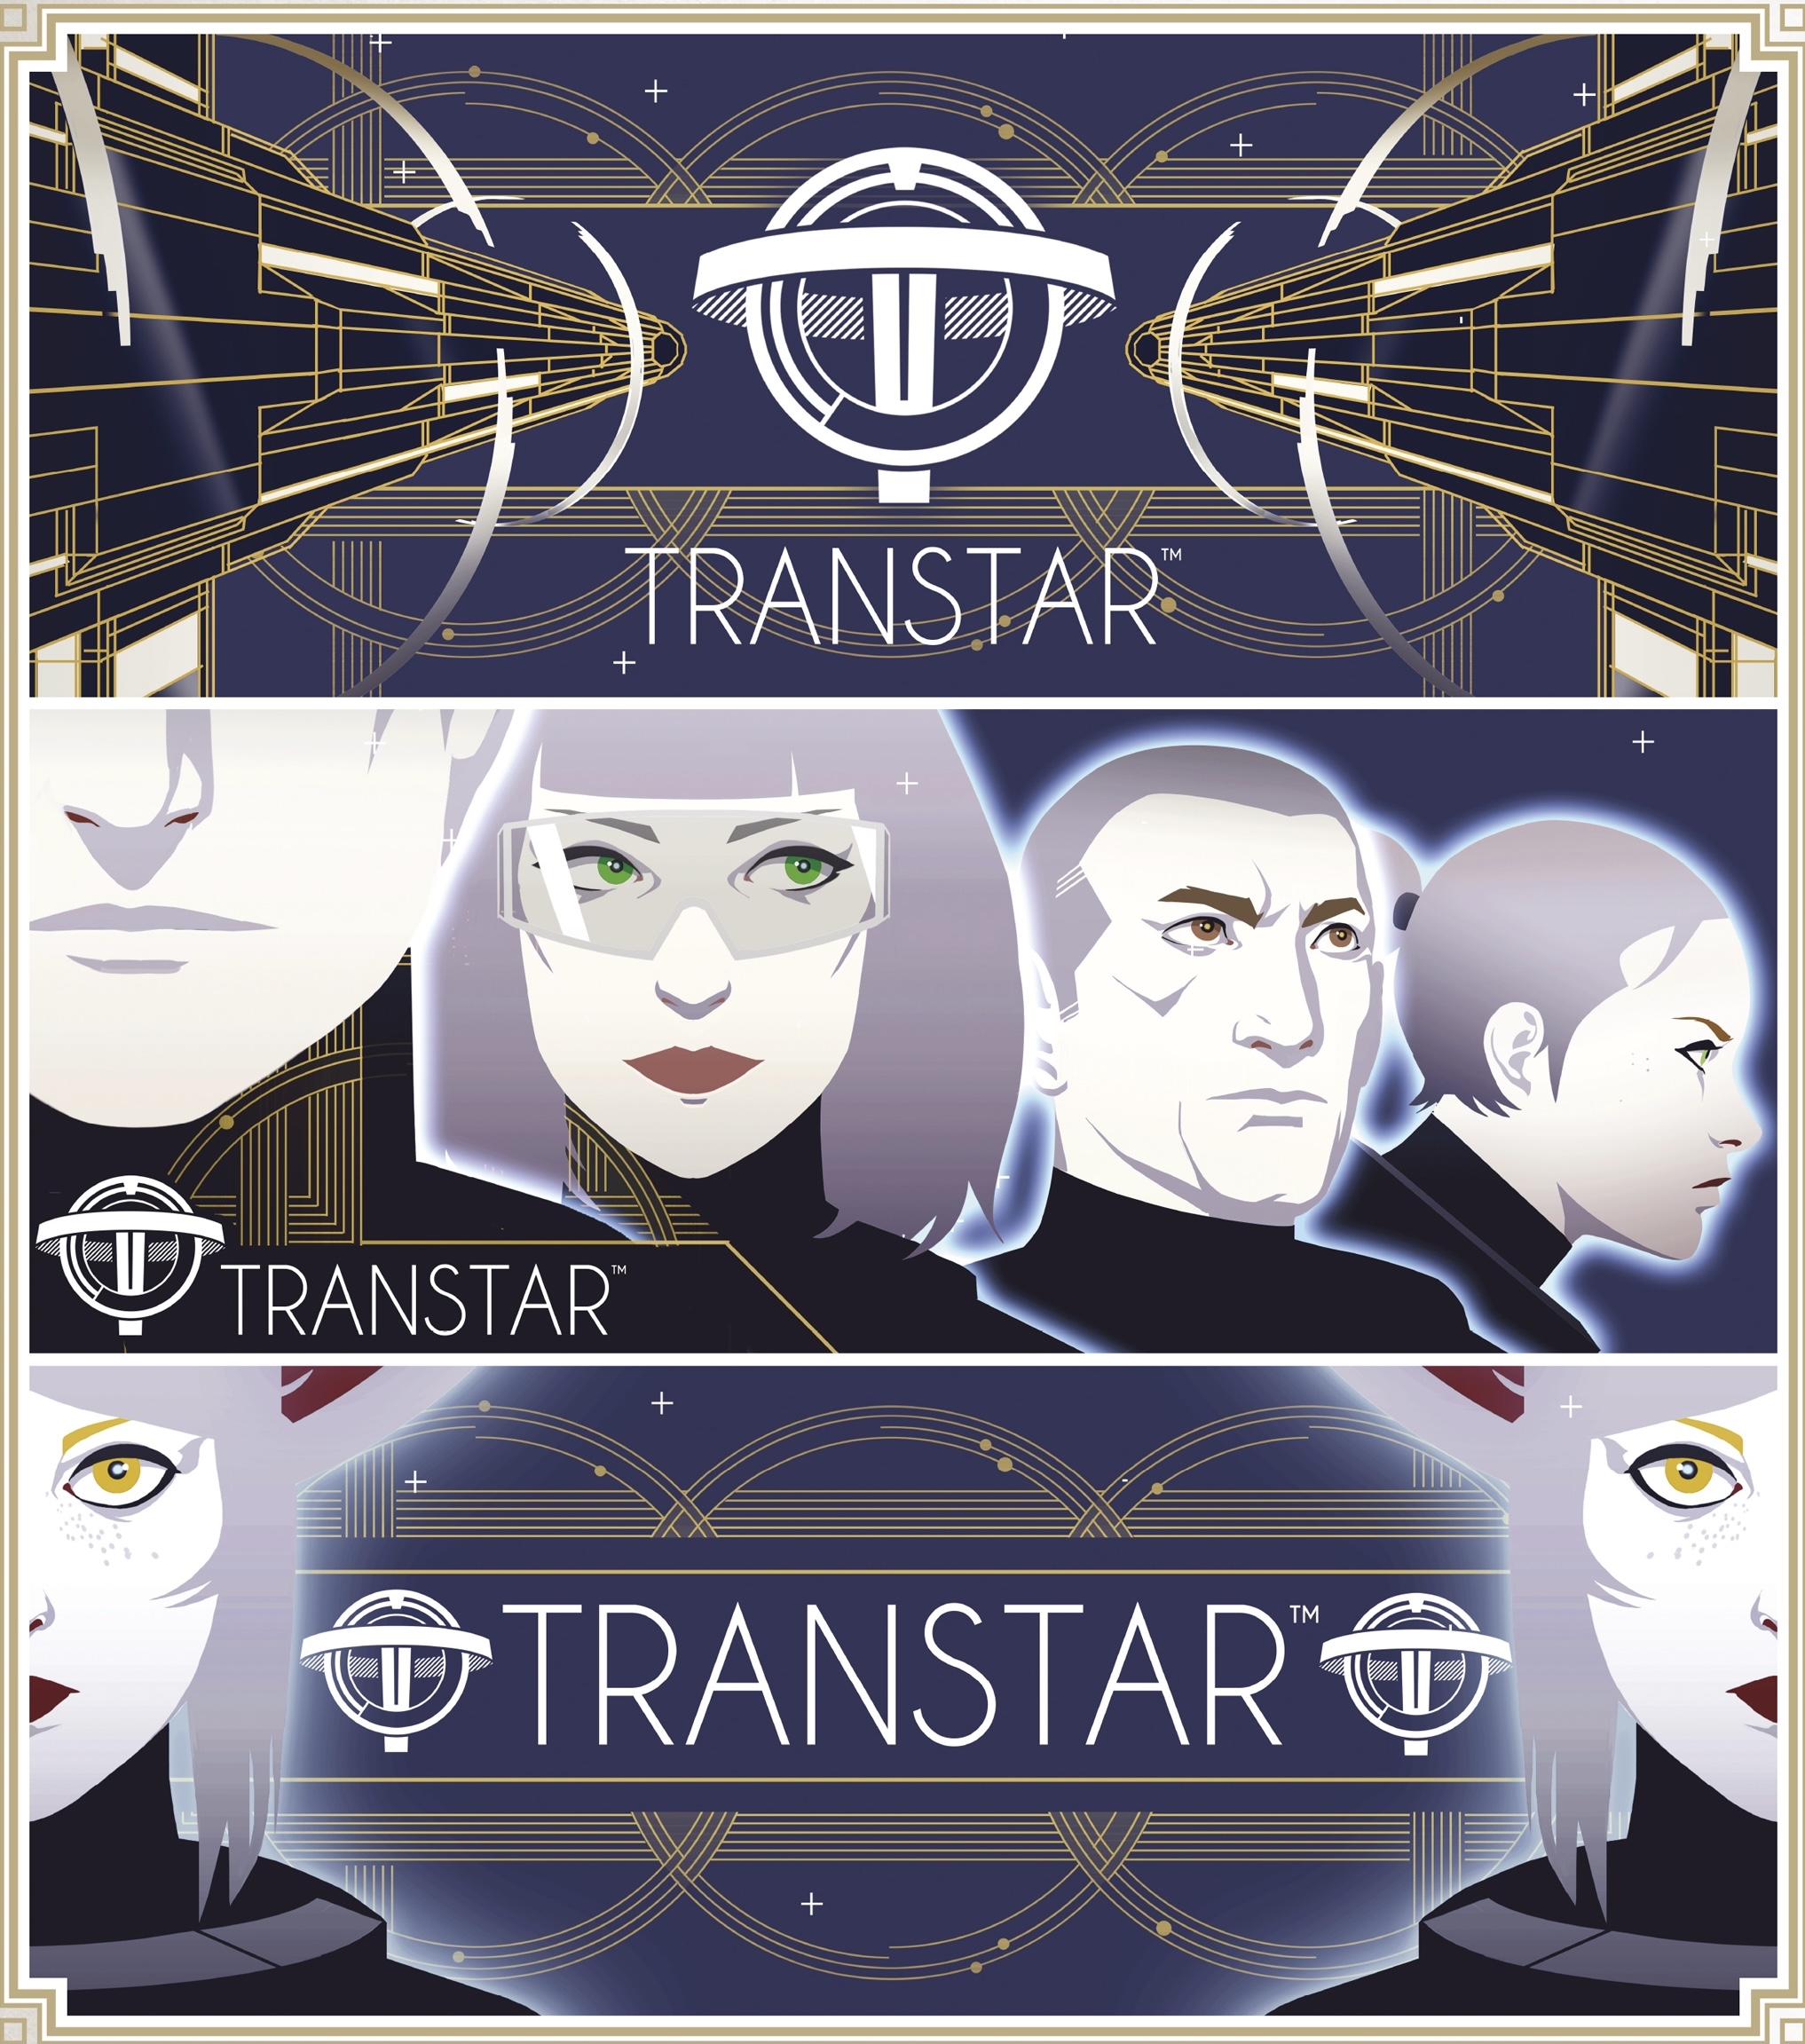 转星公司（Transtar）。塔洛斯一号与皮西亚斯月球基地的所有者。